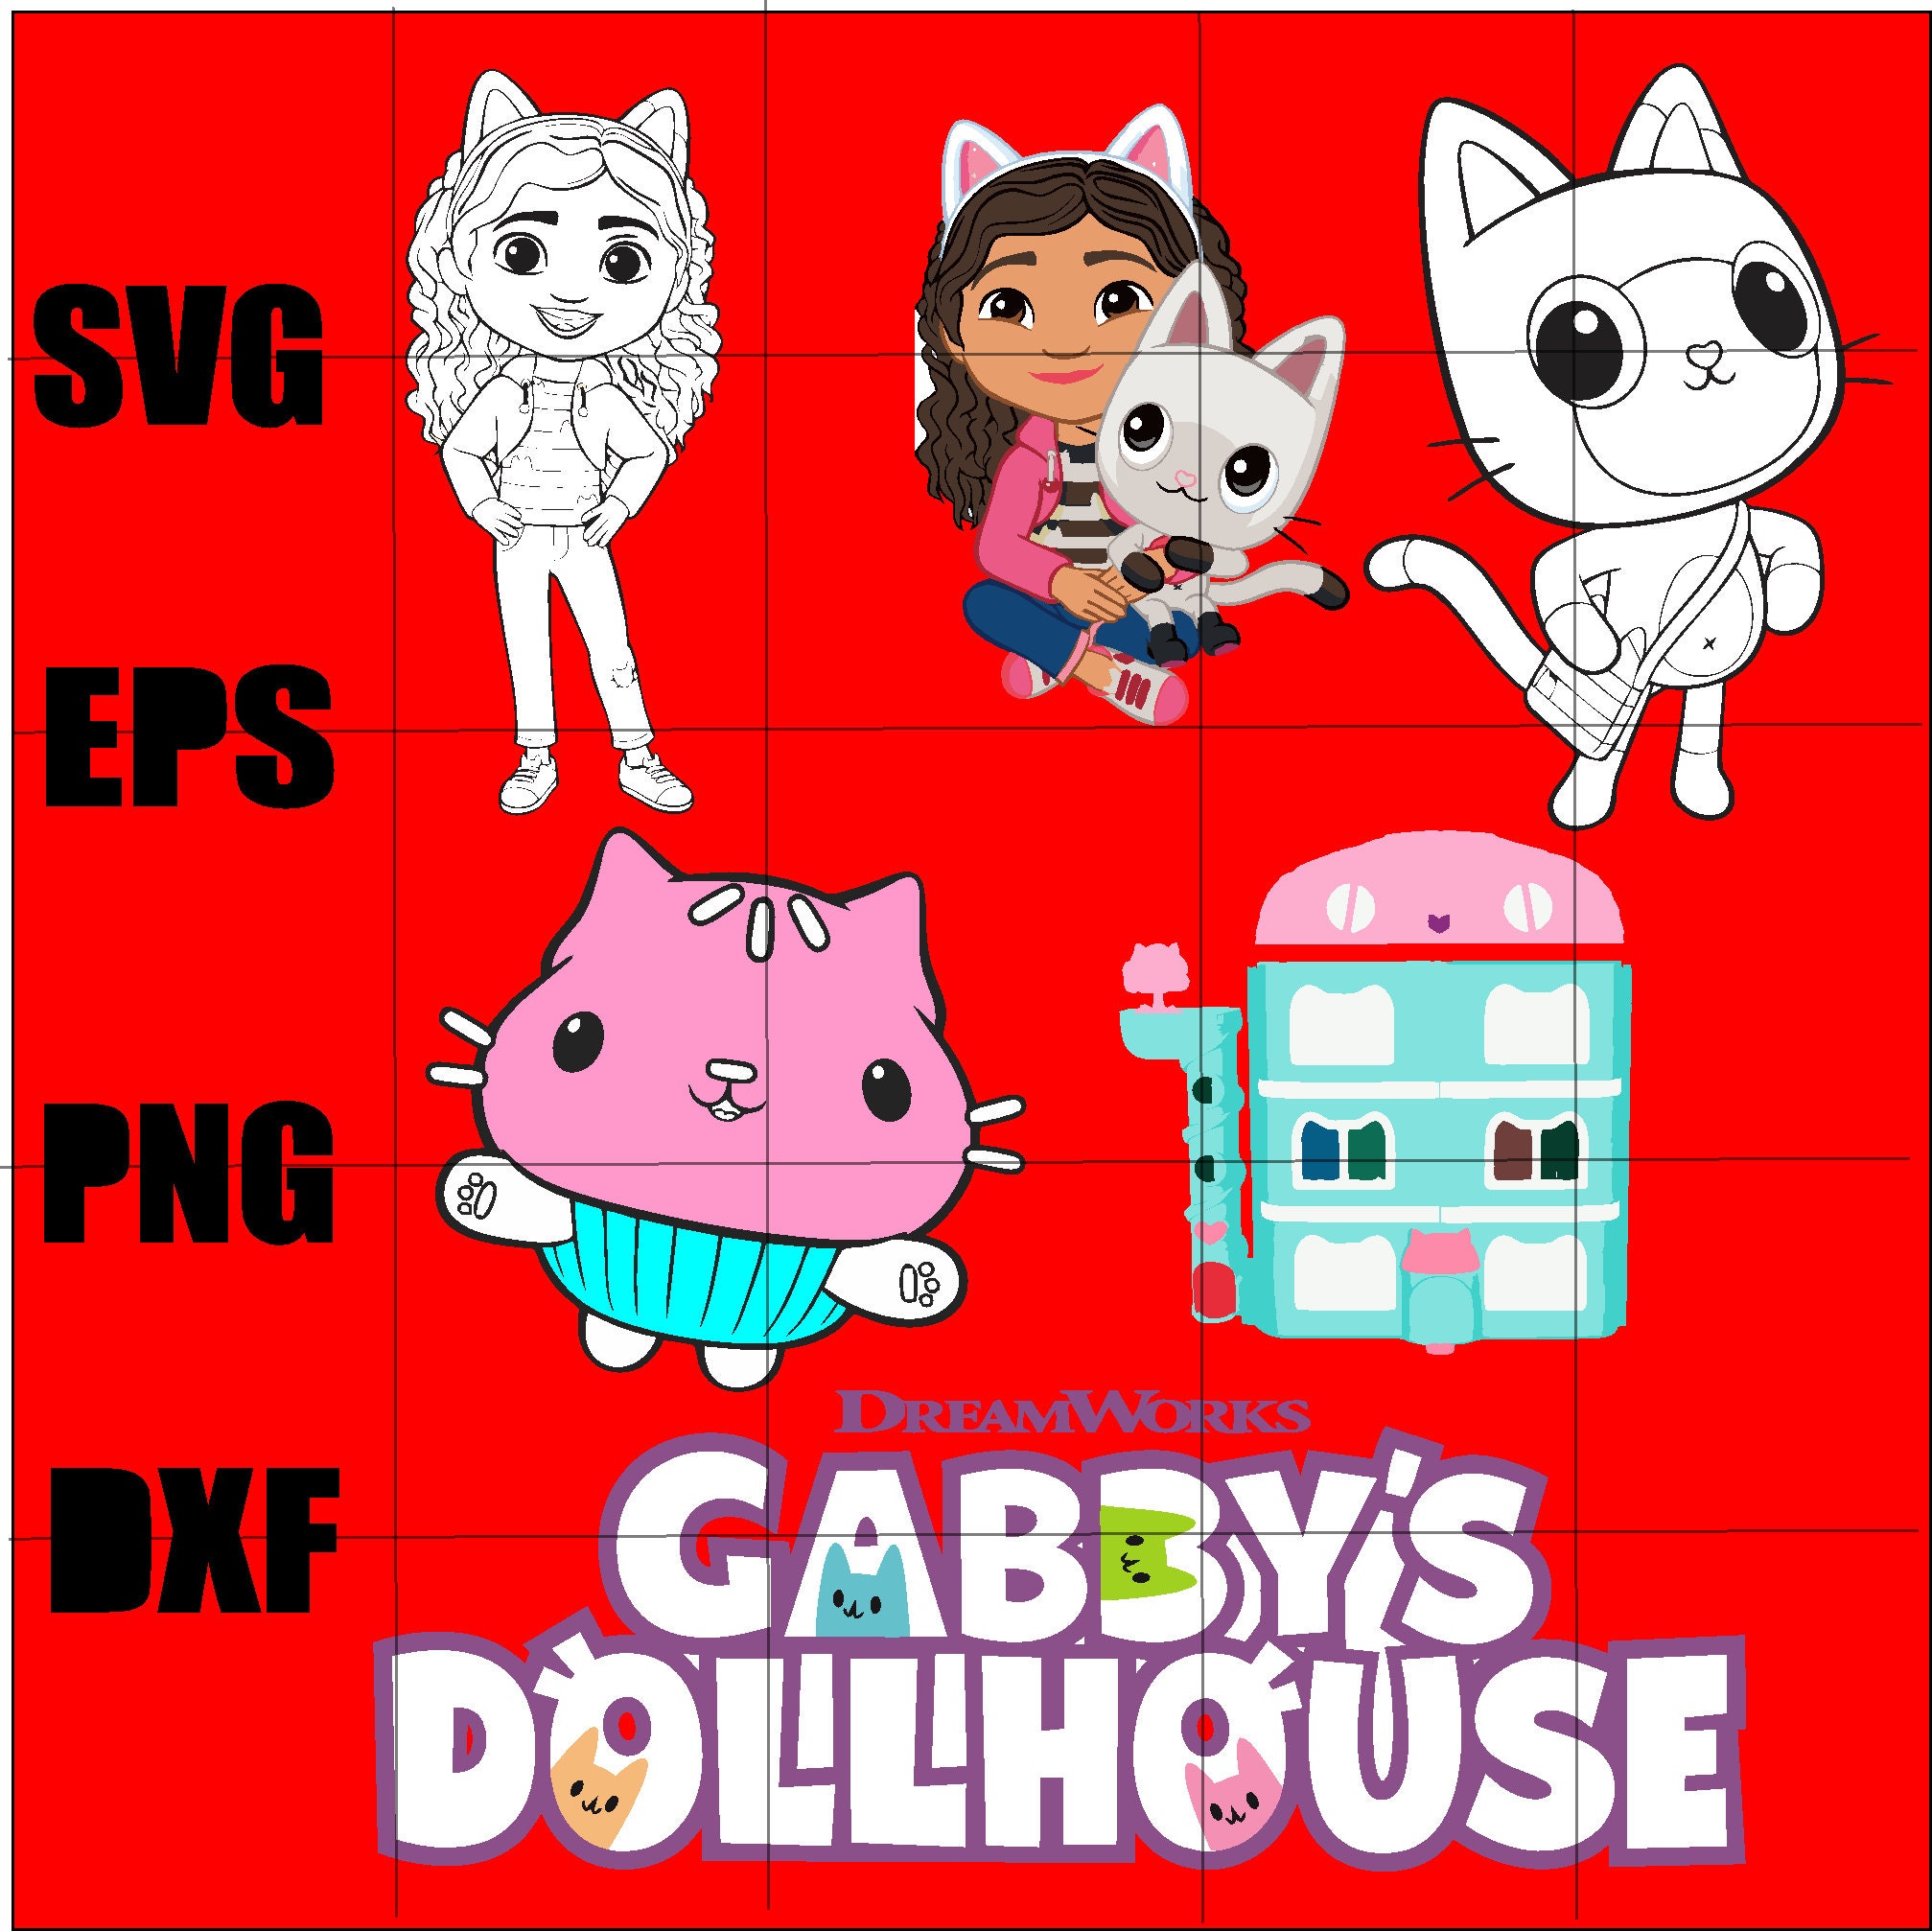 Sticker for Sale avec l'œuvre « Gabbys Dollhouse Mercat Spa » de l